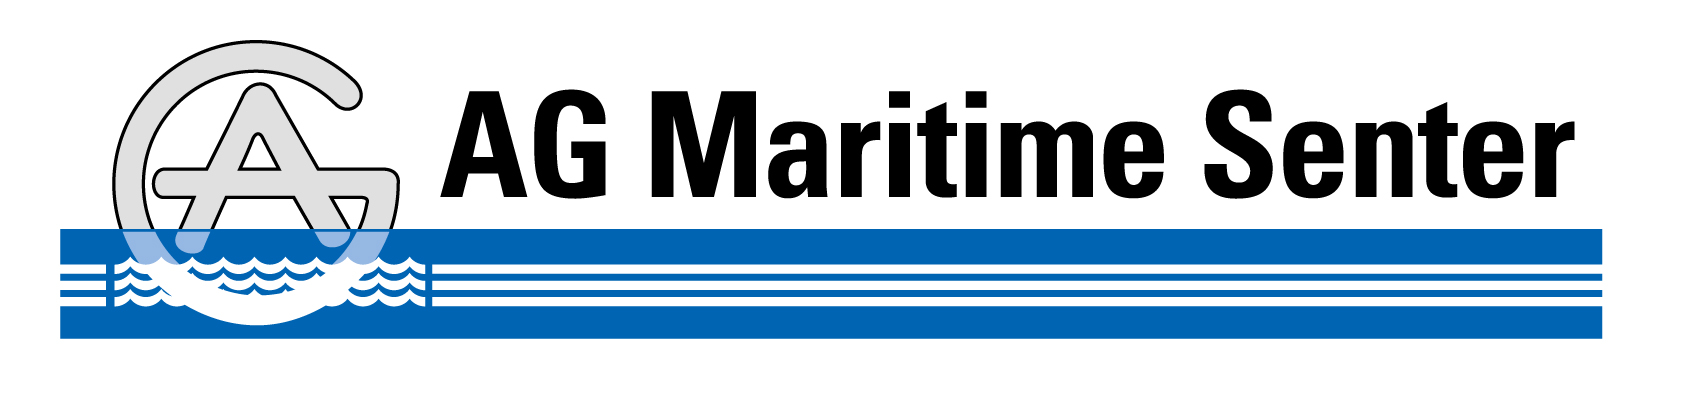 AG Maritime Senter